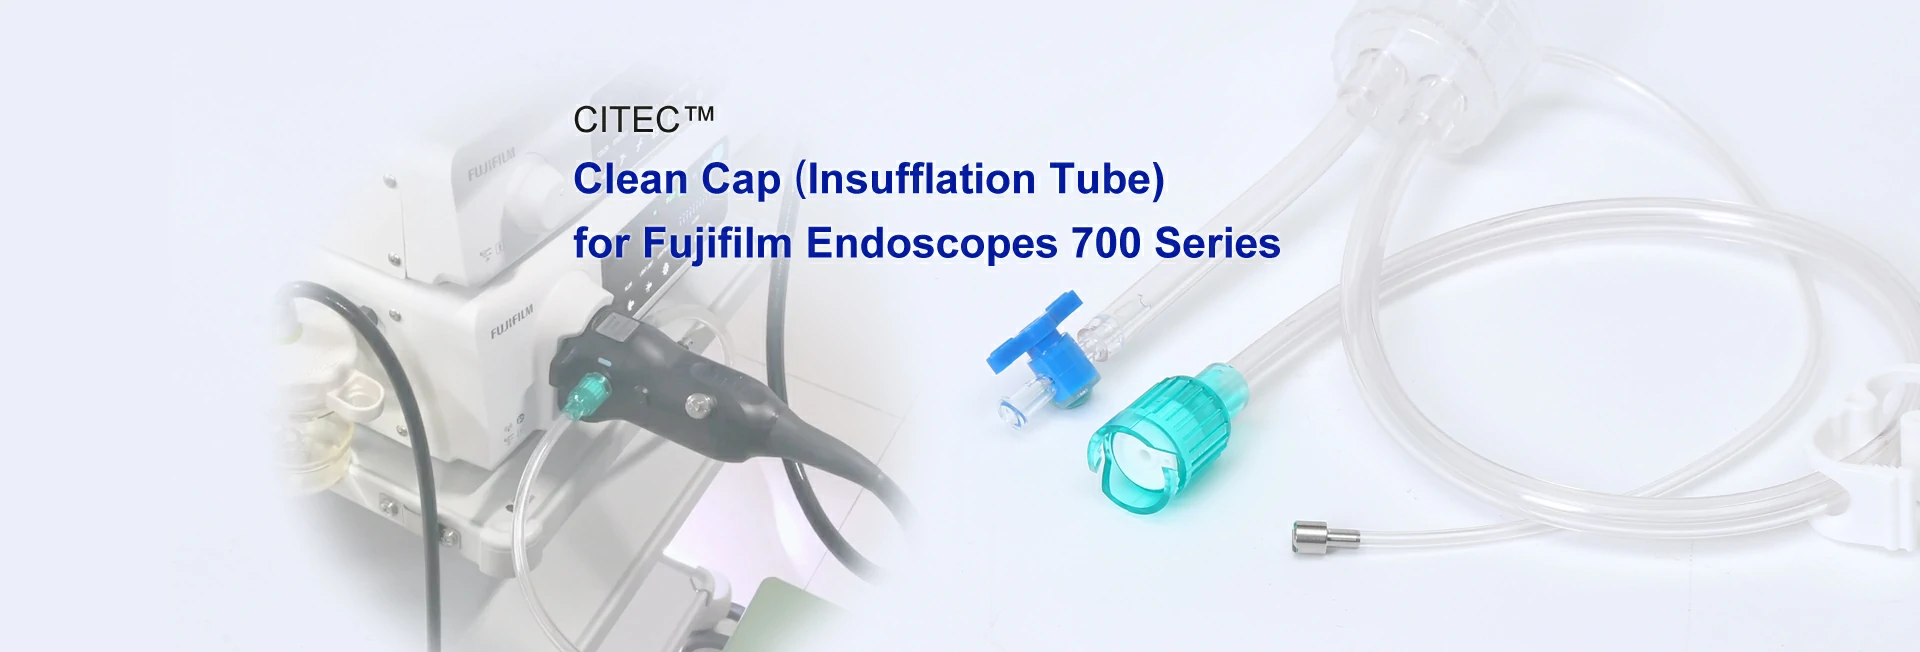 CITEC™ Clean Cap | Insufflation Tube for Fujifilm Endoscopes 700 Series